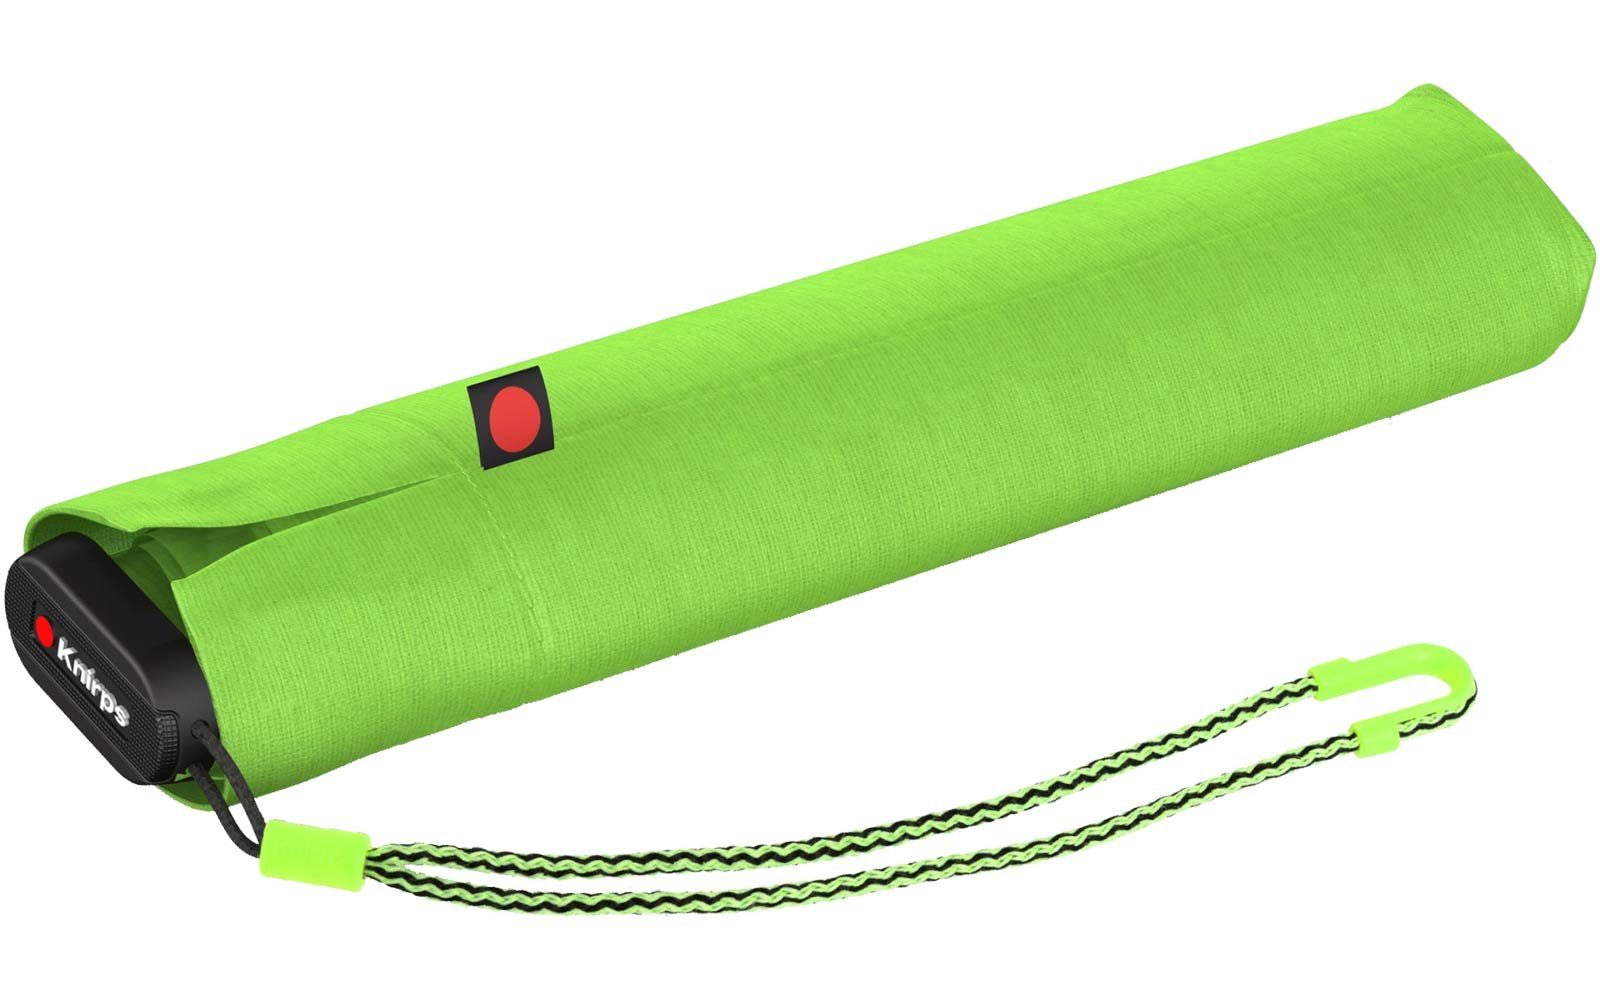 Light Manual und Neon, Taschenregenschirm grün Ultra super US.050 Knirps® kompakt - Slim leicht extrem